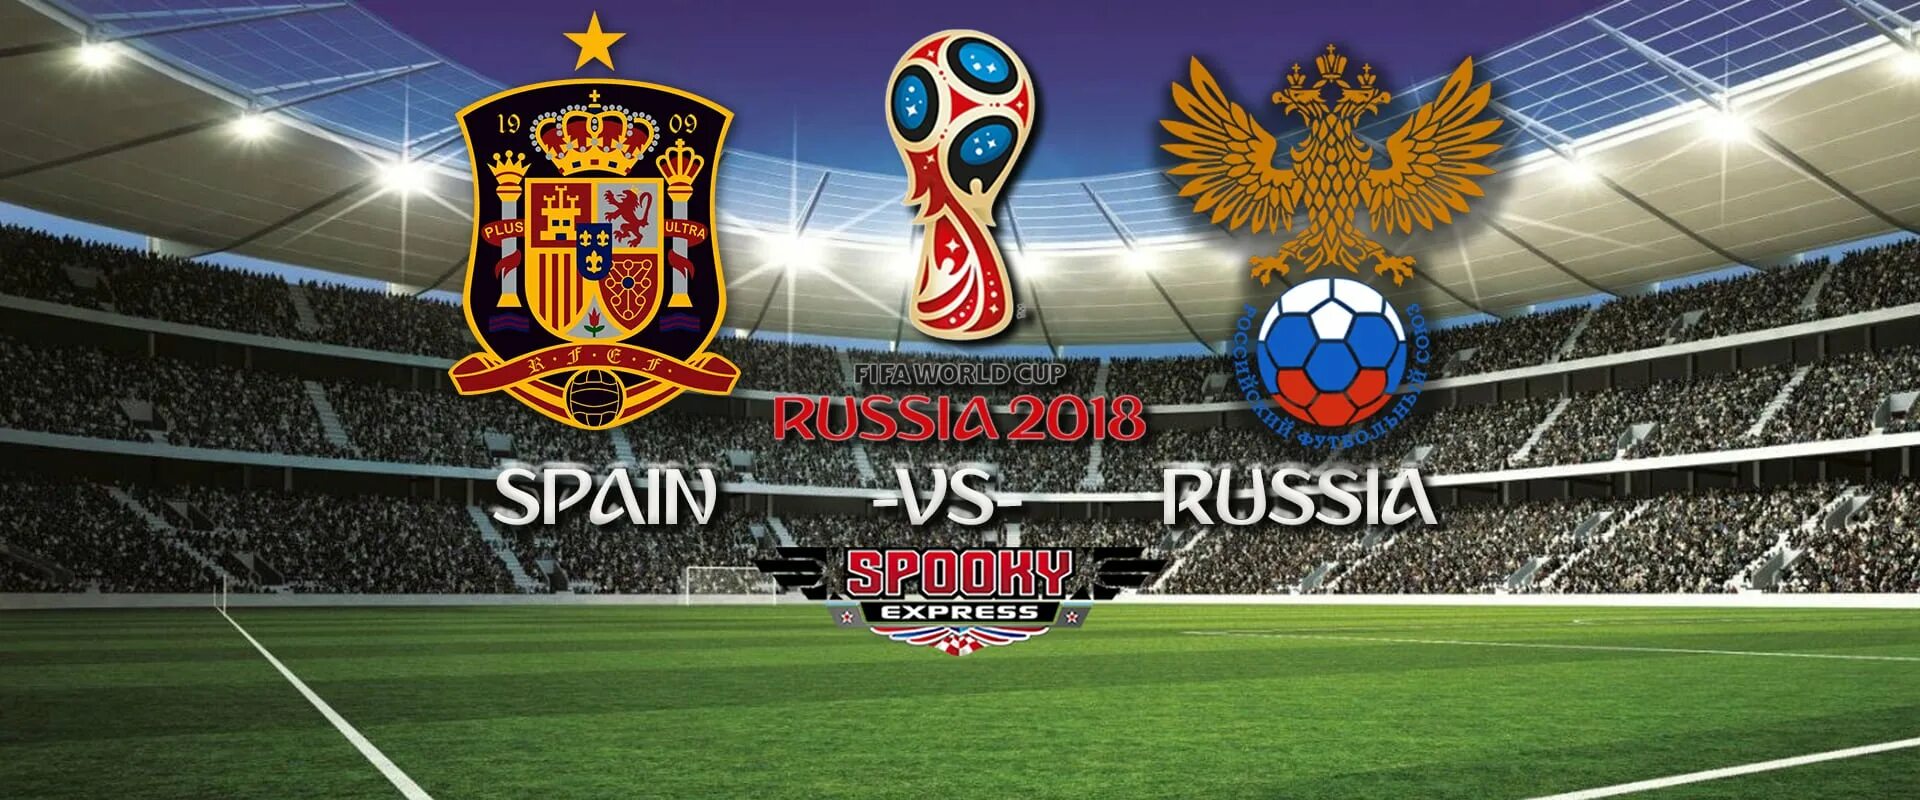 Афиши Россия против Испании. Russia vs Spain. Spain Russia 2010. Russia 2018 World Cup draw Simulator.